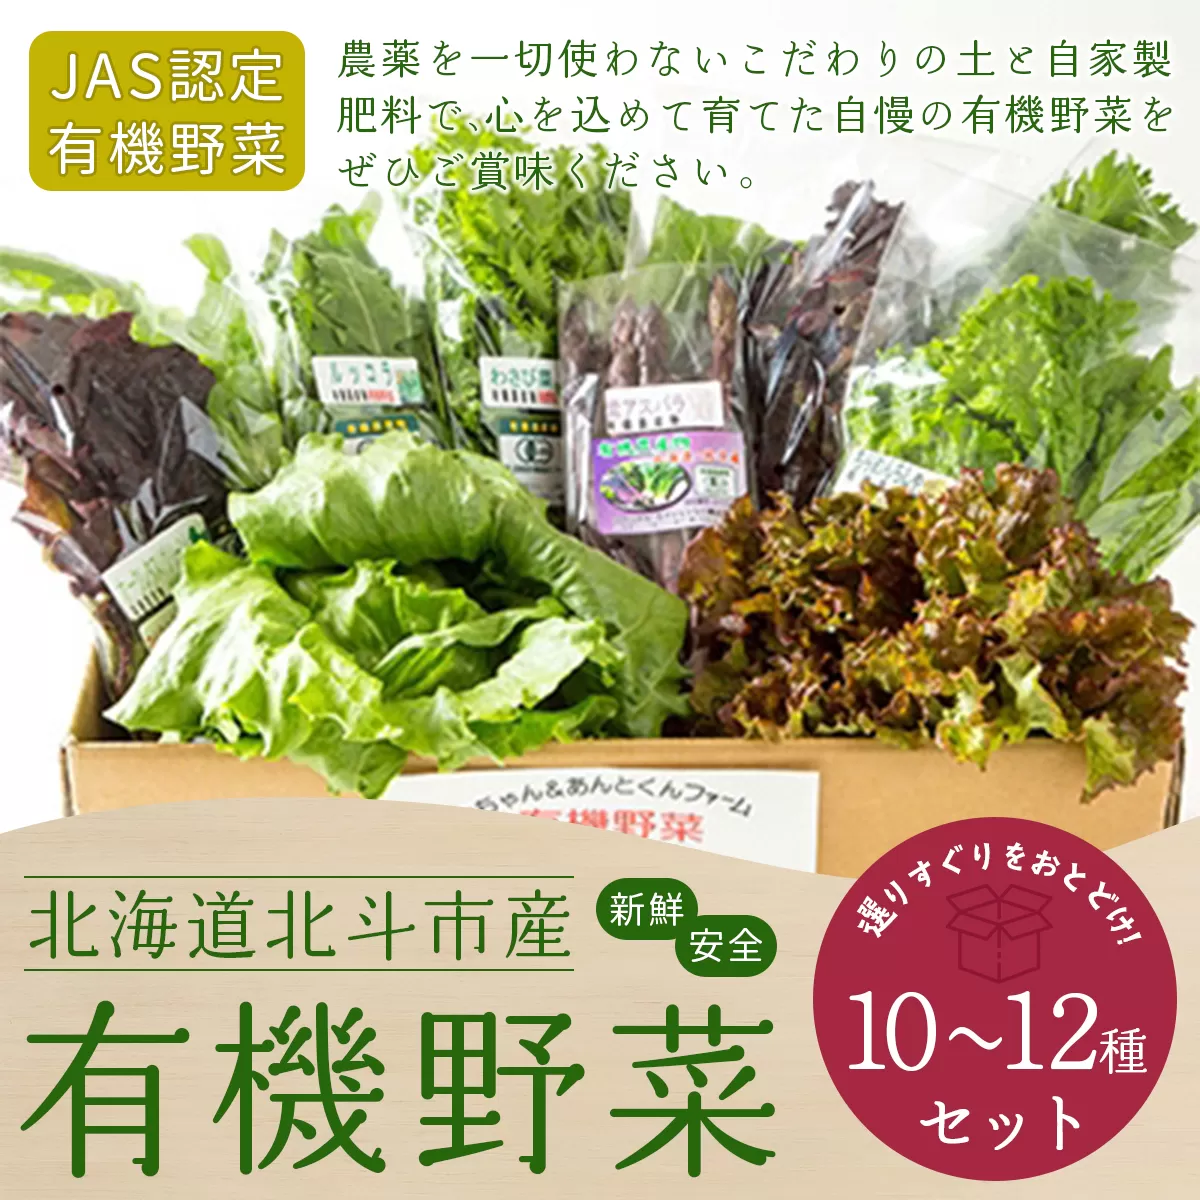 【JAS認定有機野菜】北斗市産 有機野菜10〜12種類野菜セット 紙箱入(季節で種類が変わります) HOKB021